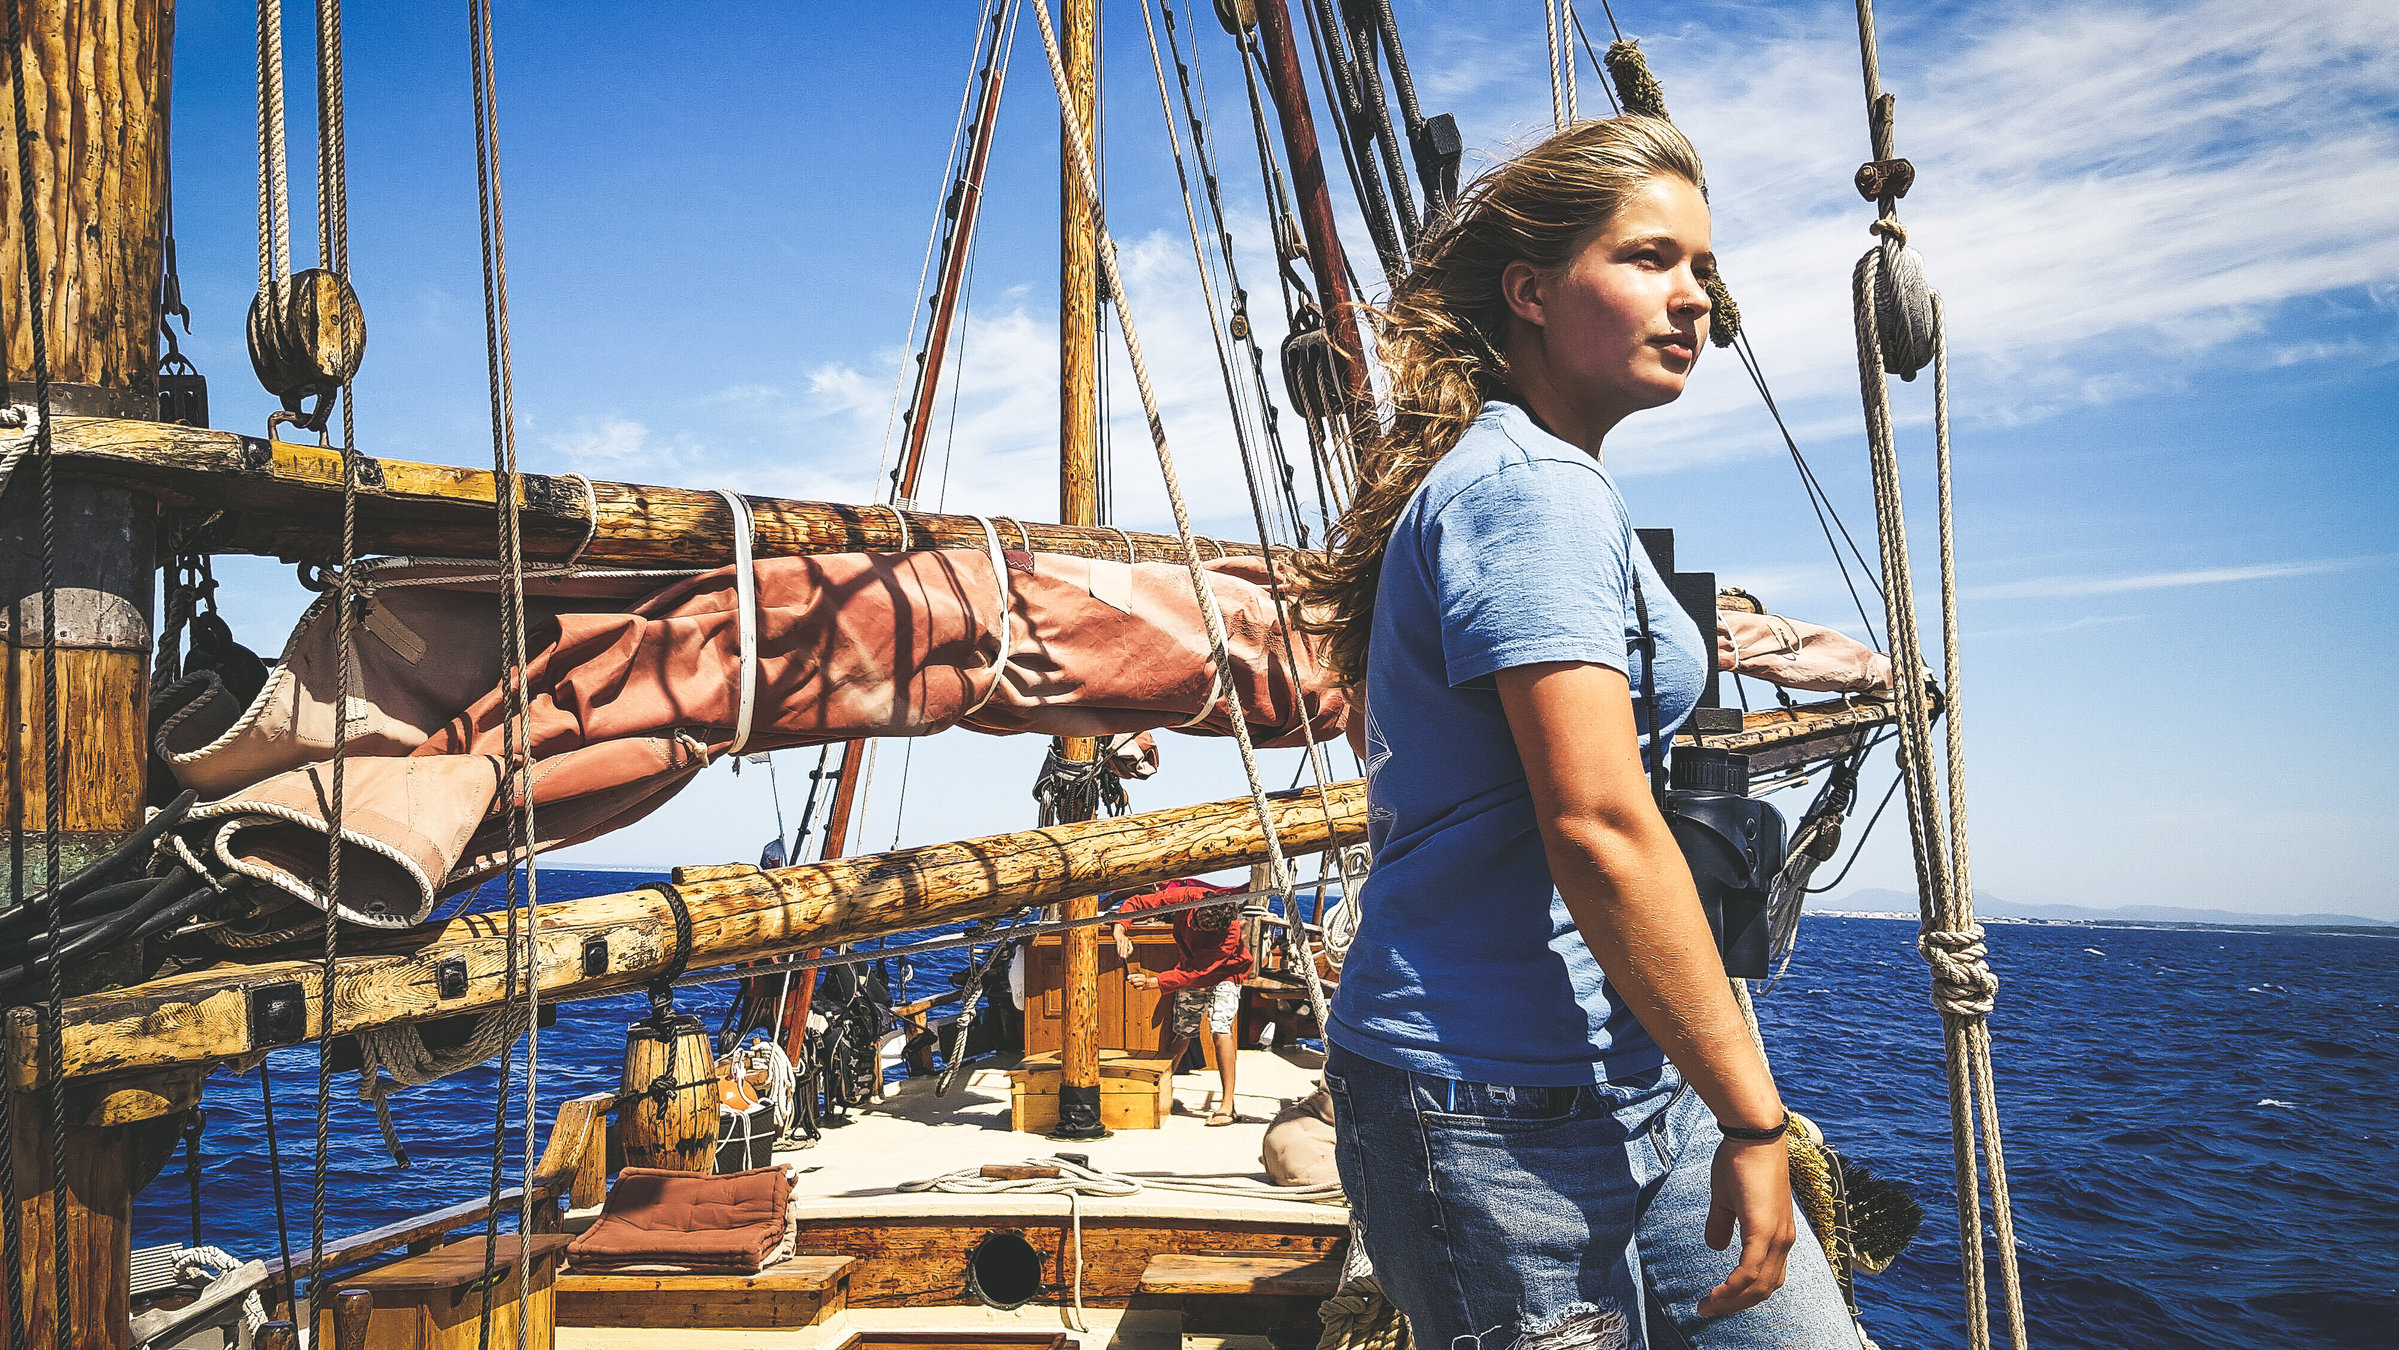 "Terra Xpress: Geheimnisse vor Mallorca und Auswandern ins Glück": Sophie Ruge steht auf einem Segelschiff und schaut aufs Meer hinaus.